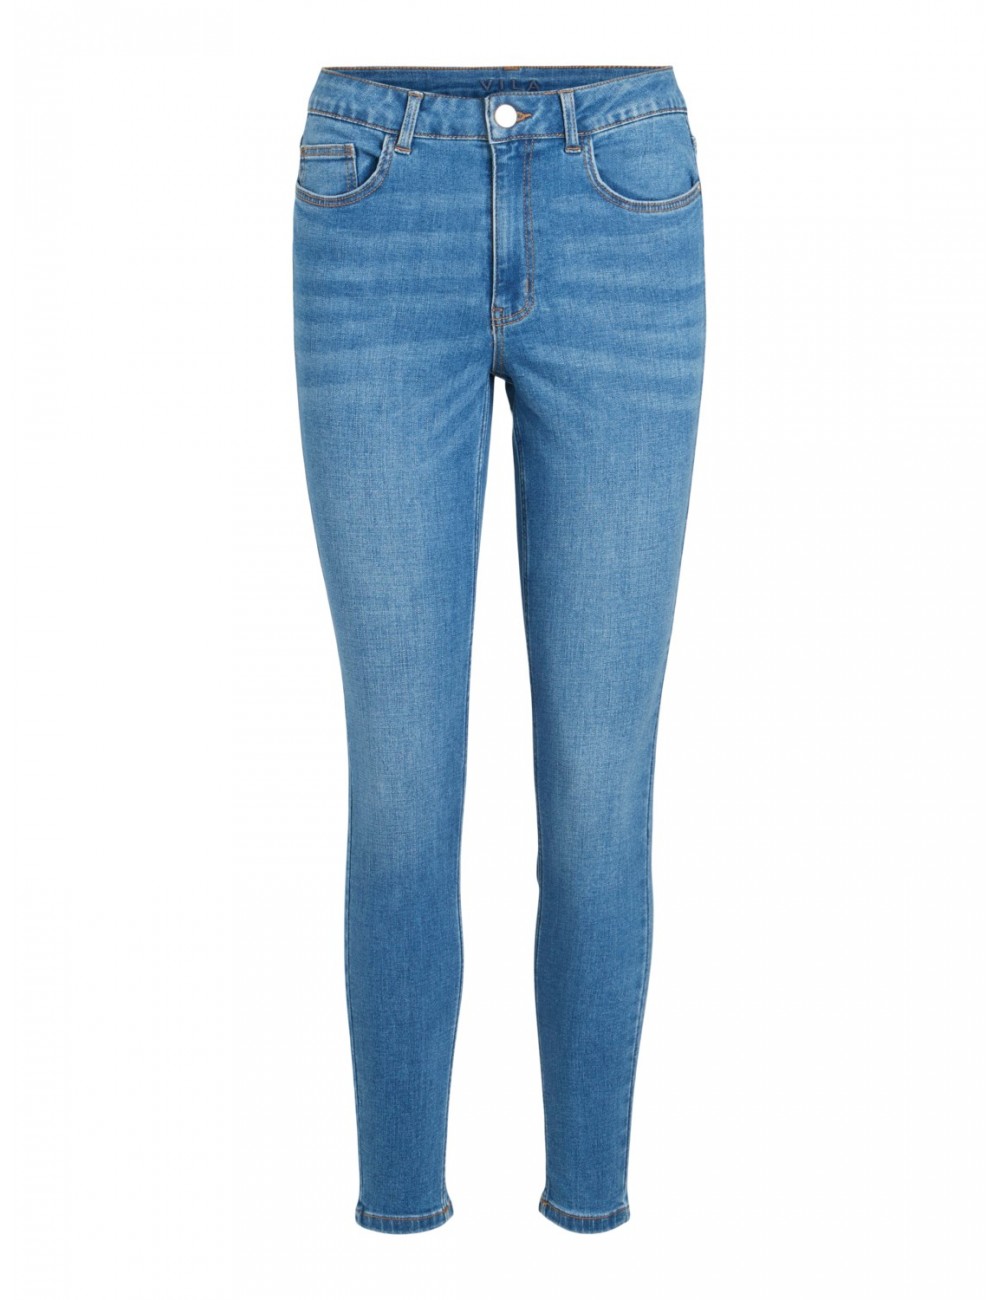 Pantalón Jeans modelo Sarah pitillo de Vila.